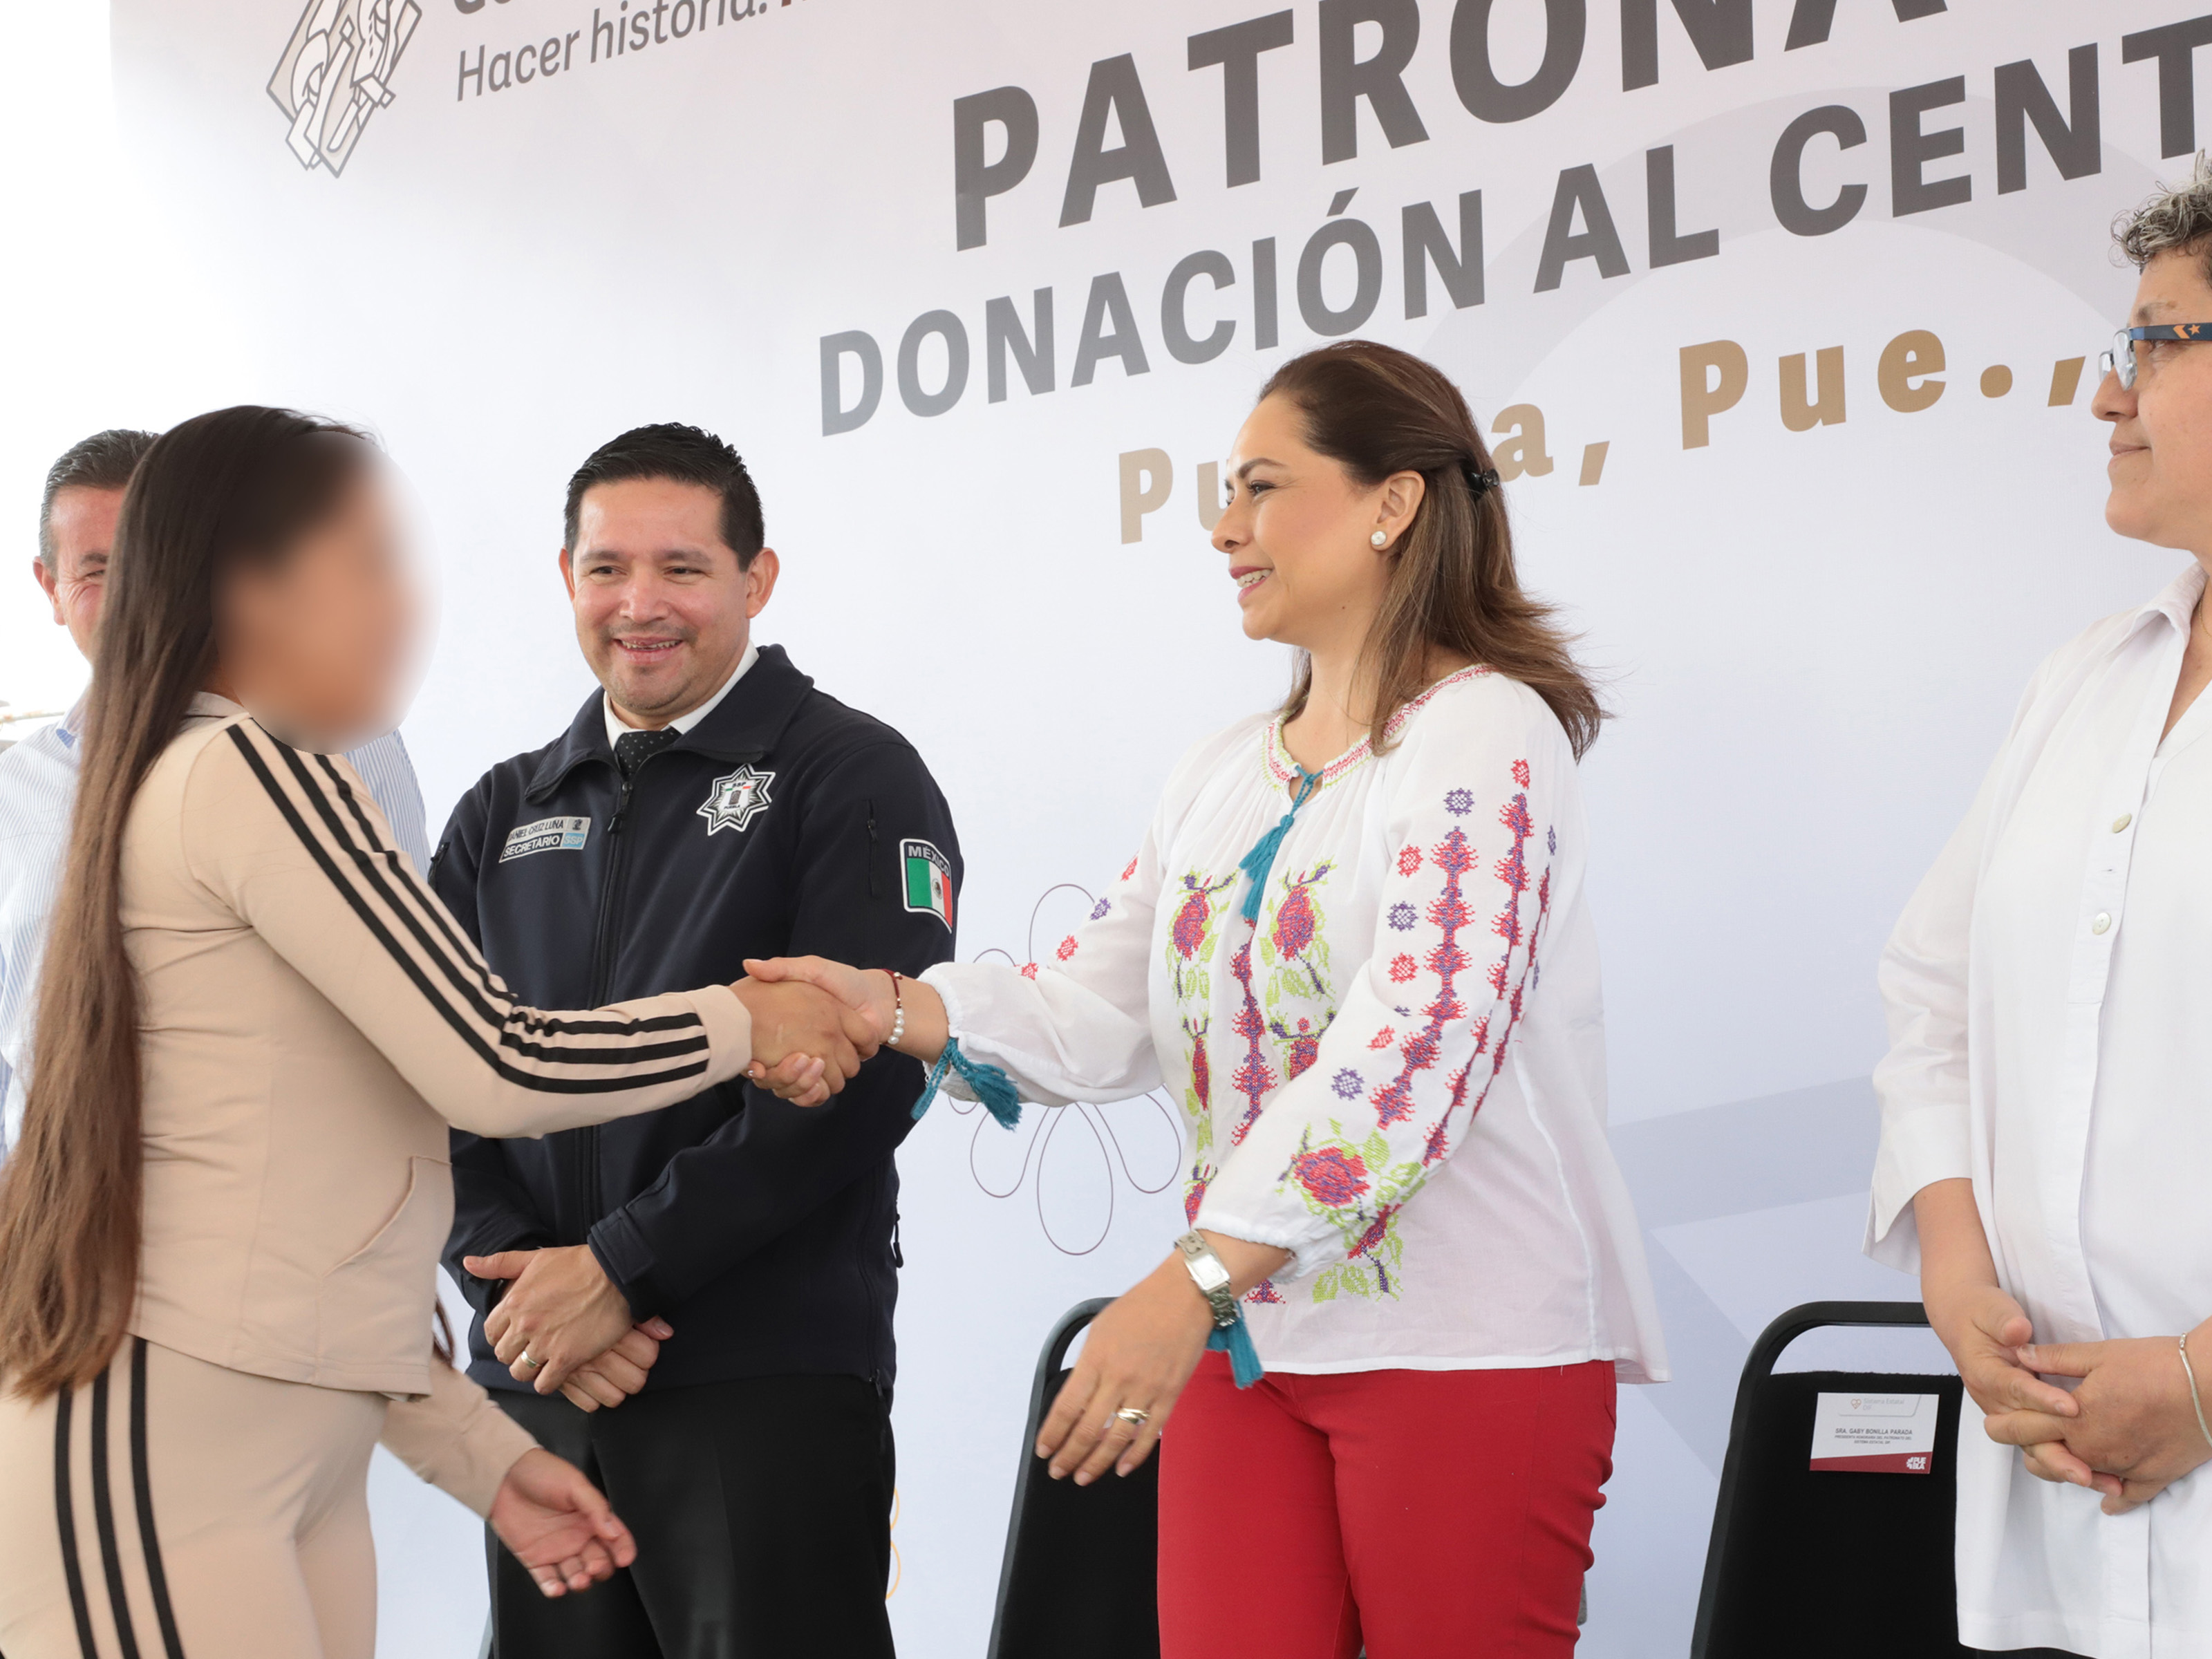 Con donación, SEDIF beneficia a población femenil del Centro Penitenciario Puebla